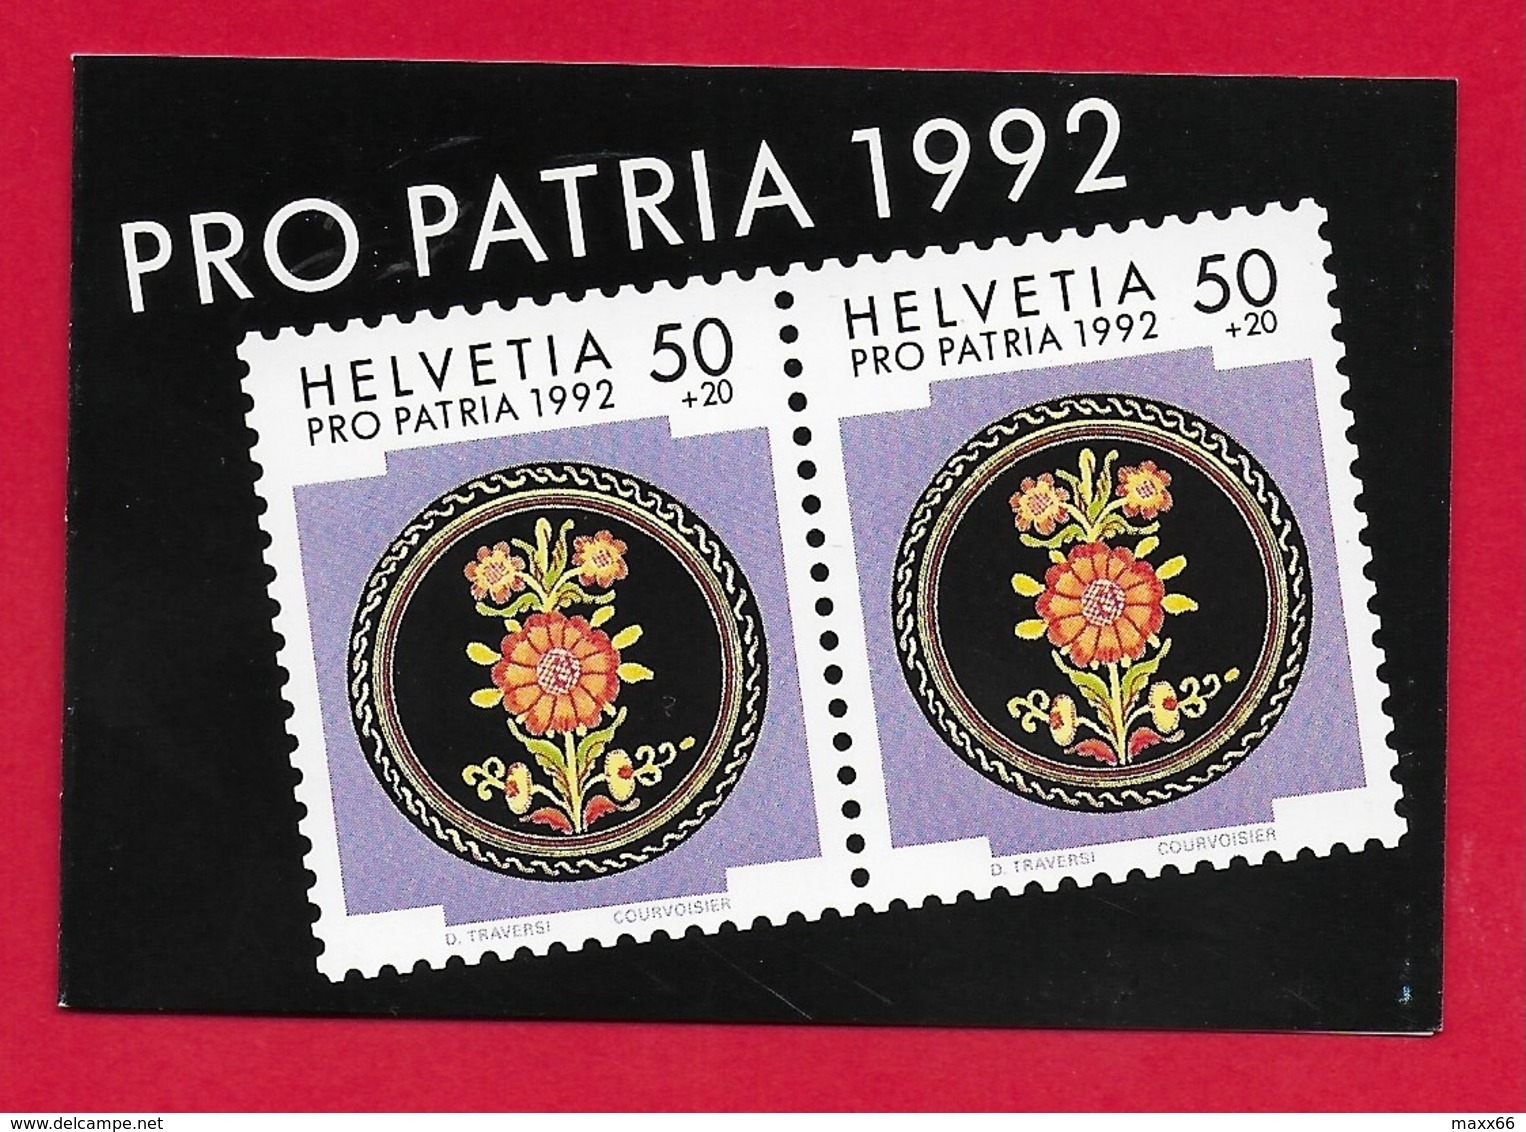 LIBRETTO SVIZZERA MNH - PRO PATRIA 1992 - 10 X 50 + 20 Cent. - Unused Stamps